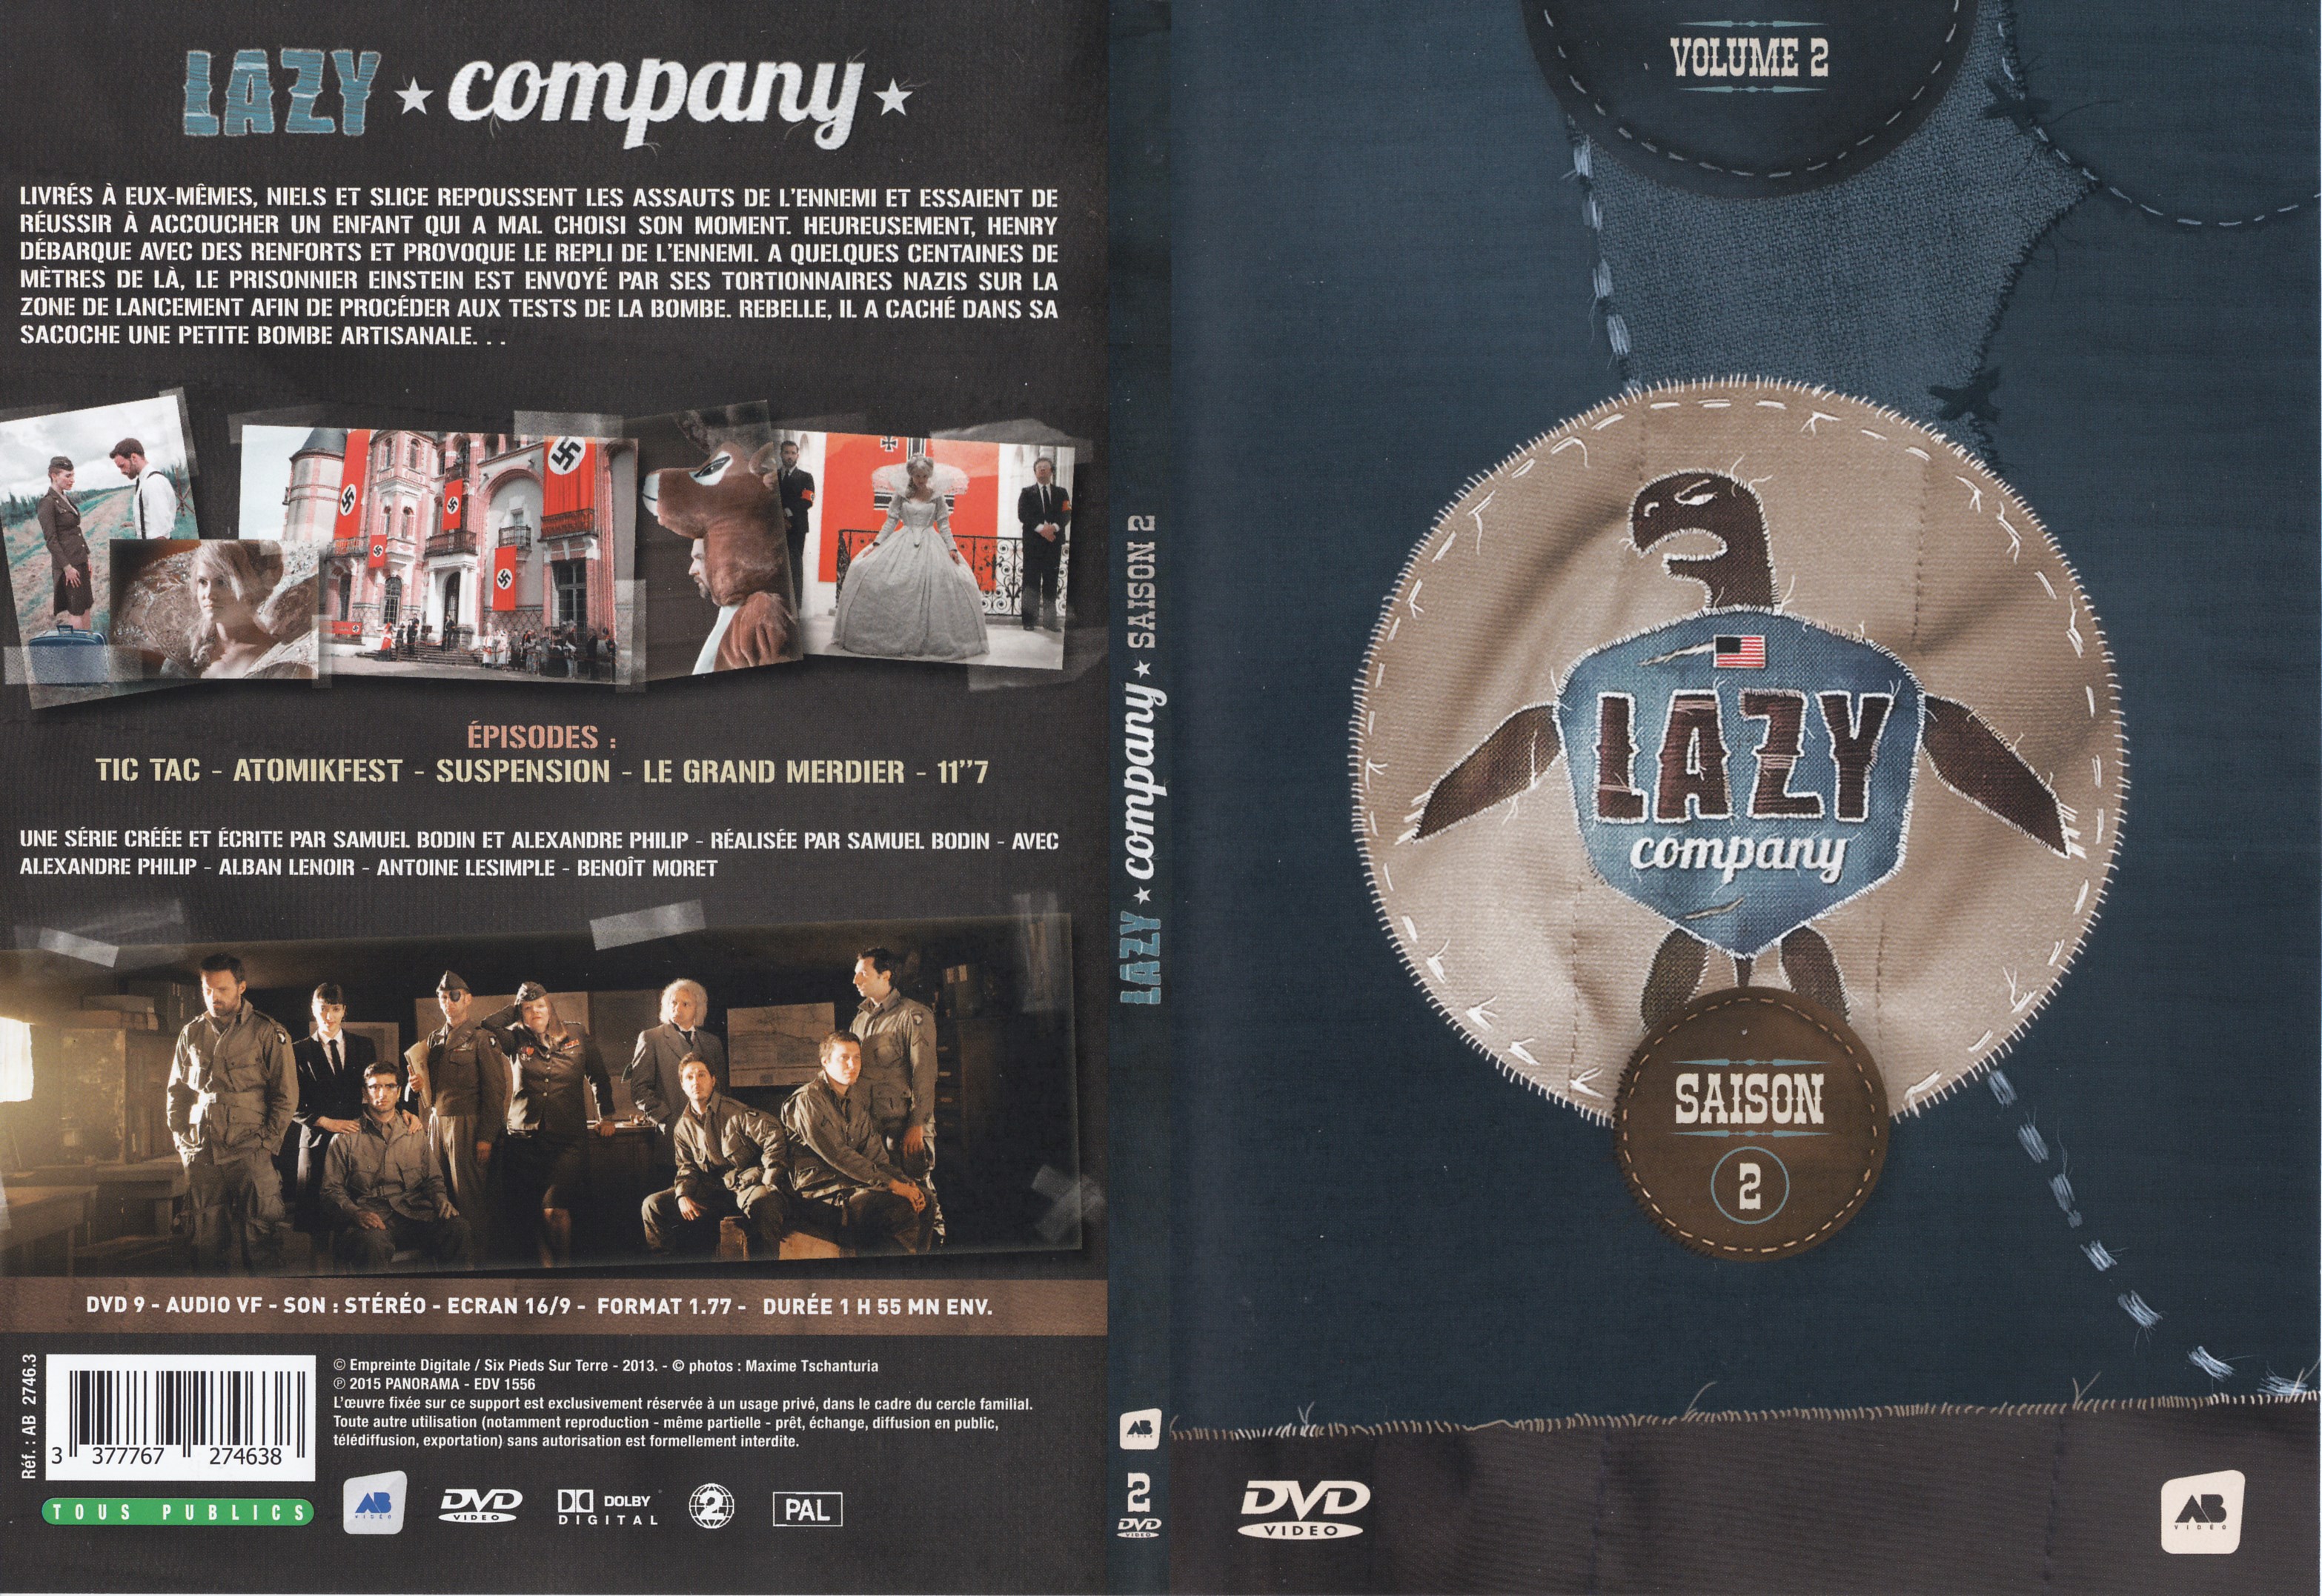 Jaquette DVD Lazy company Saison 2 vol 2